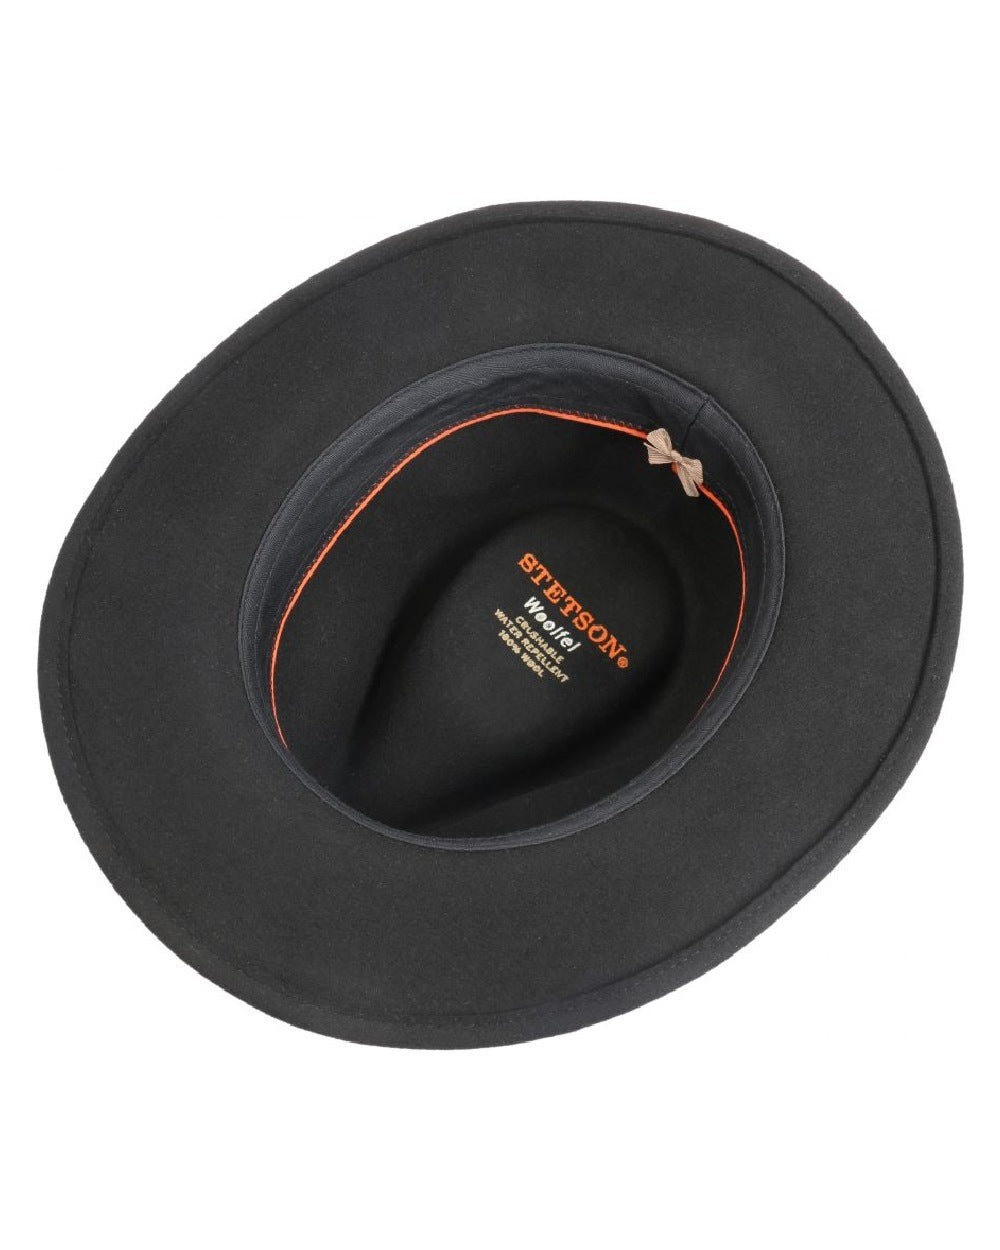 Stetson Yutan Wool Hat in Black 